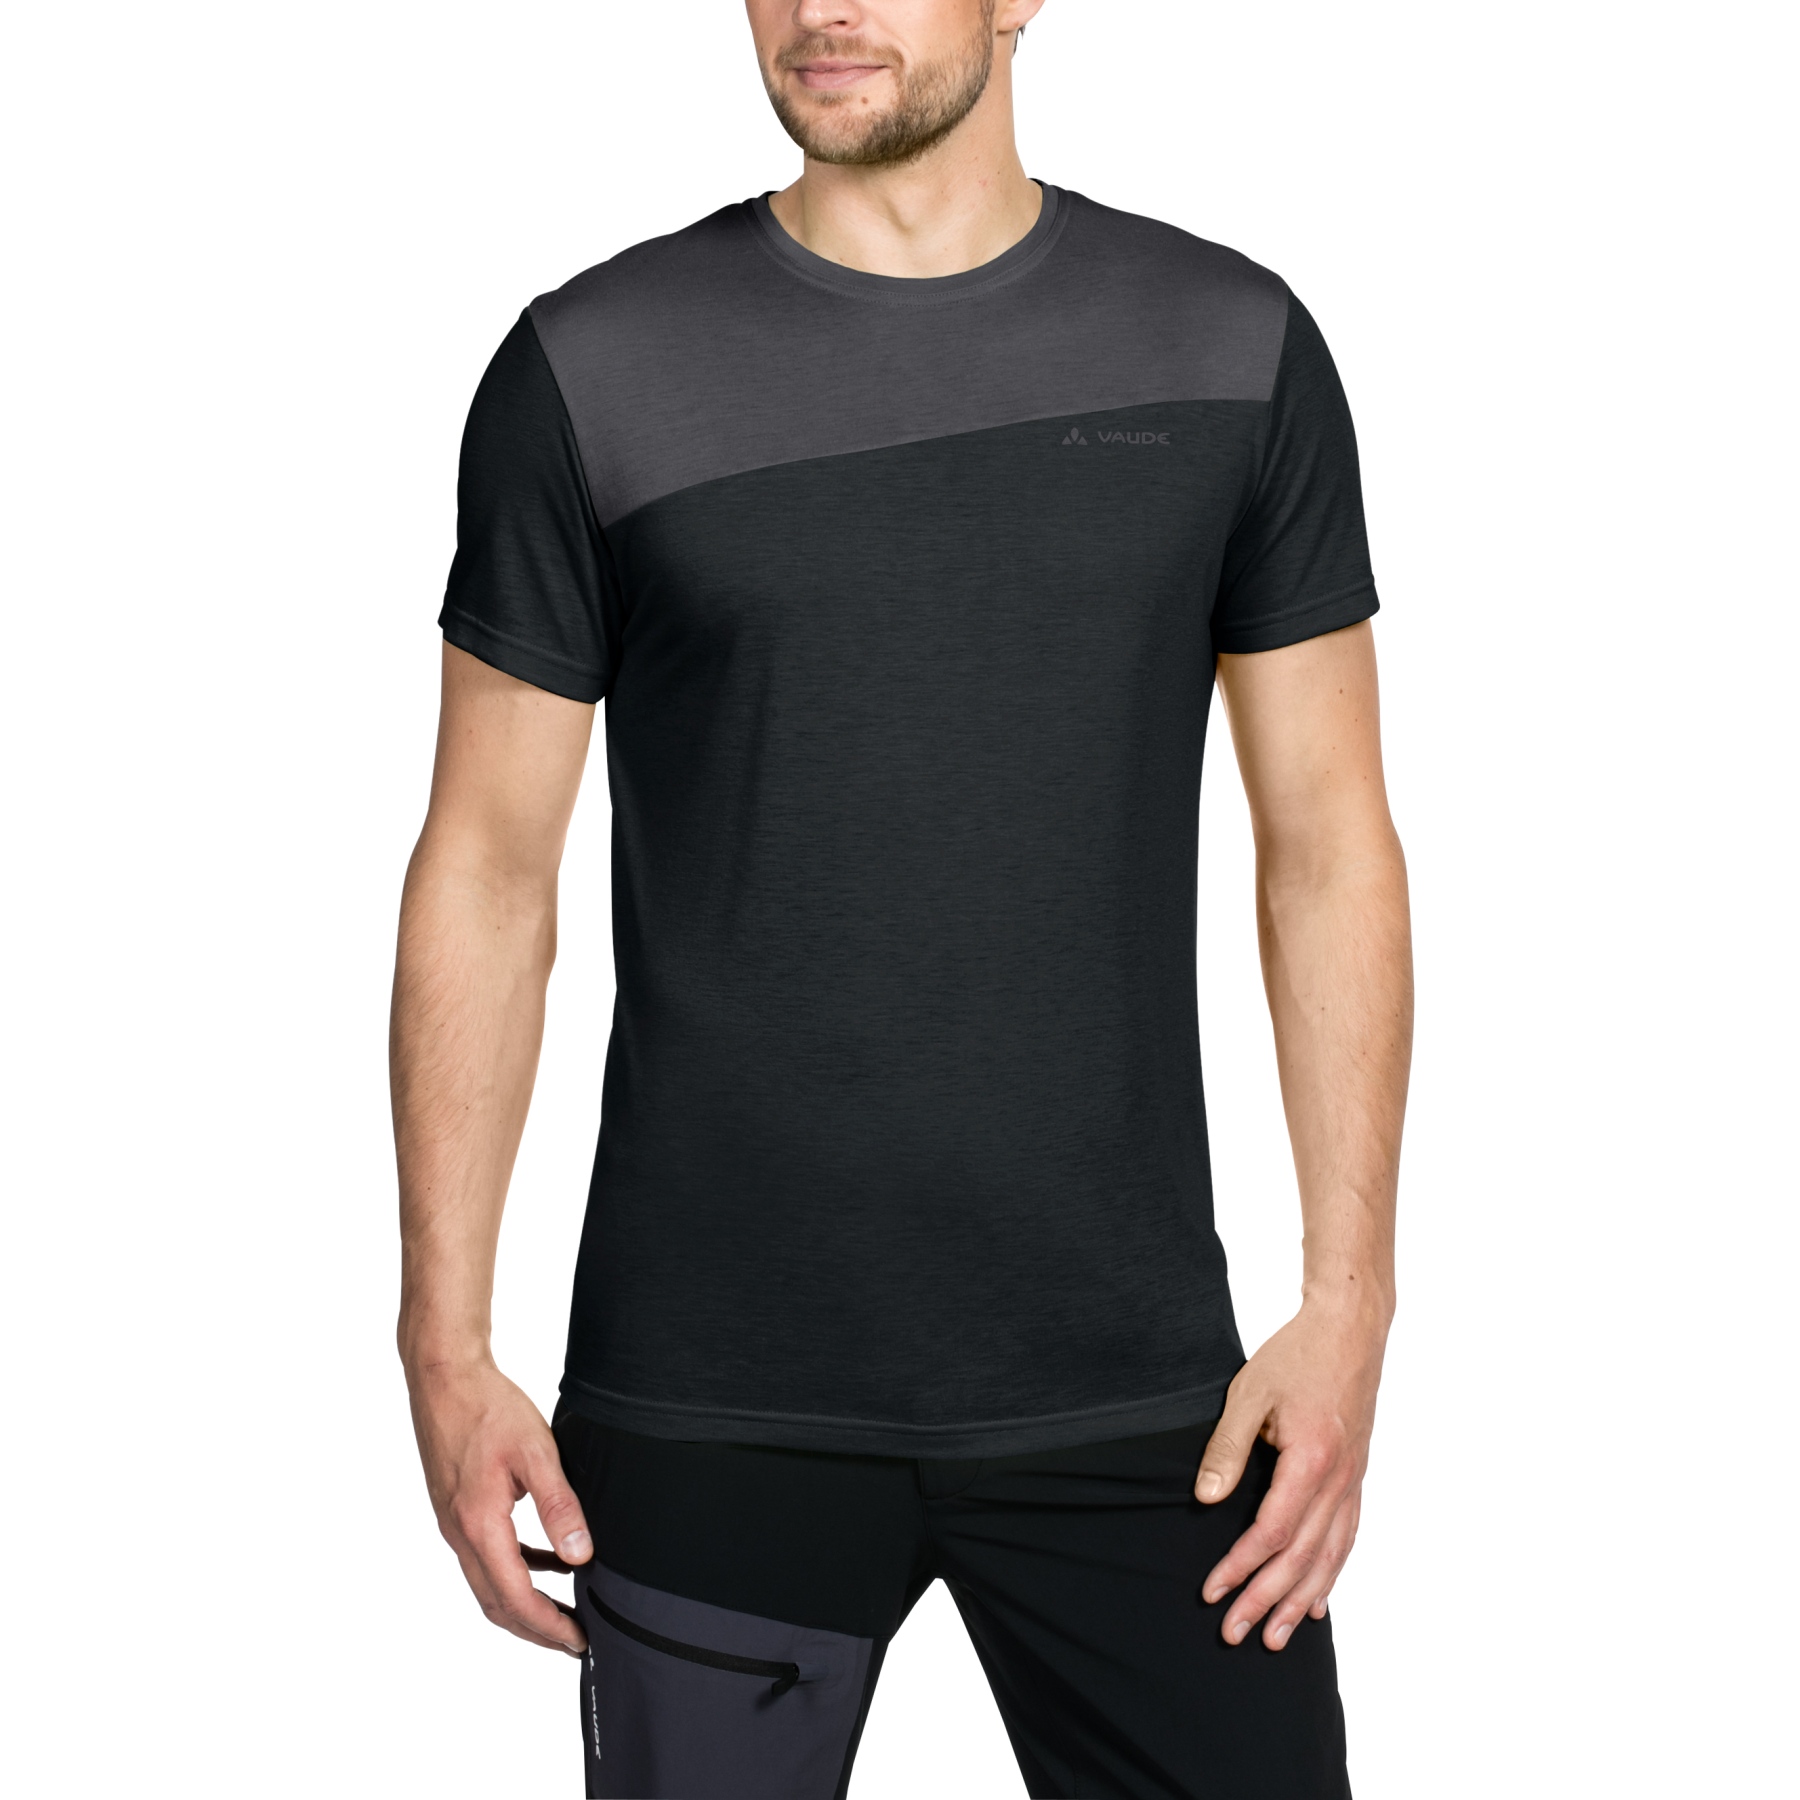 Produktbild von Vaude Sveit Shirt Herren - schwarz